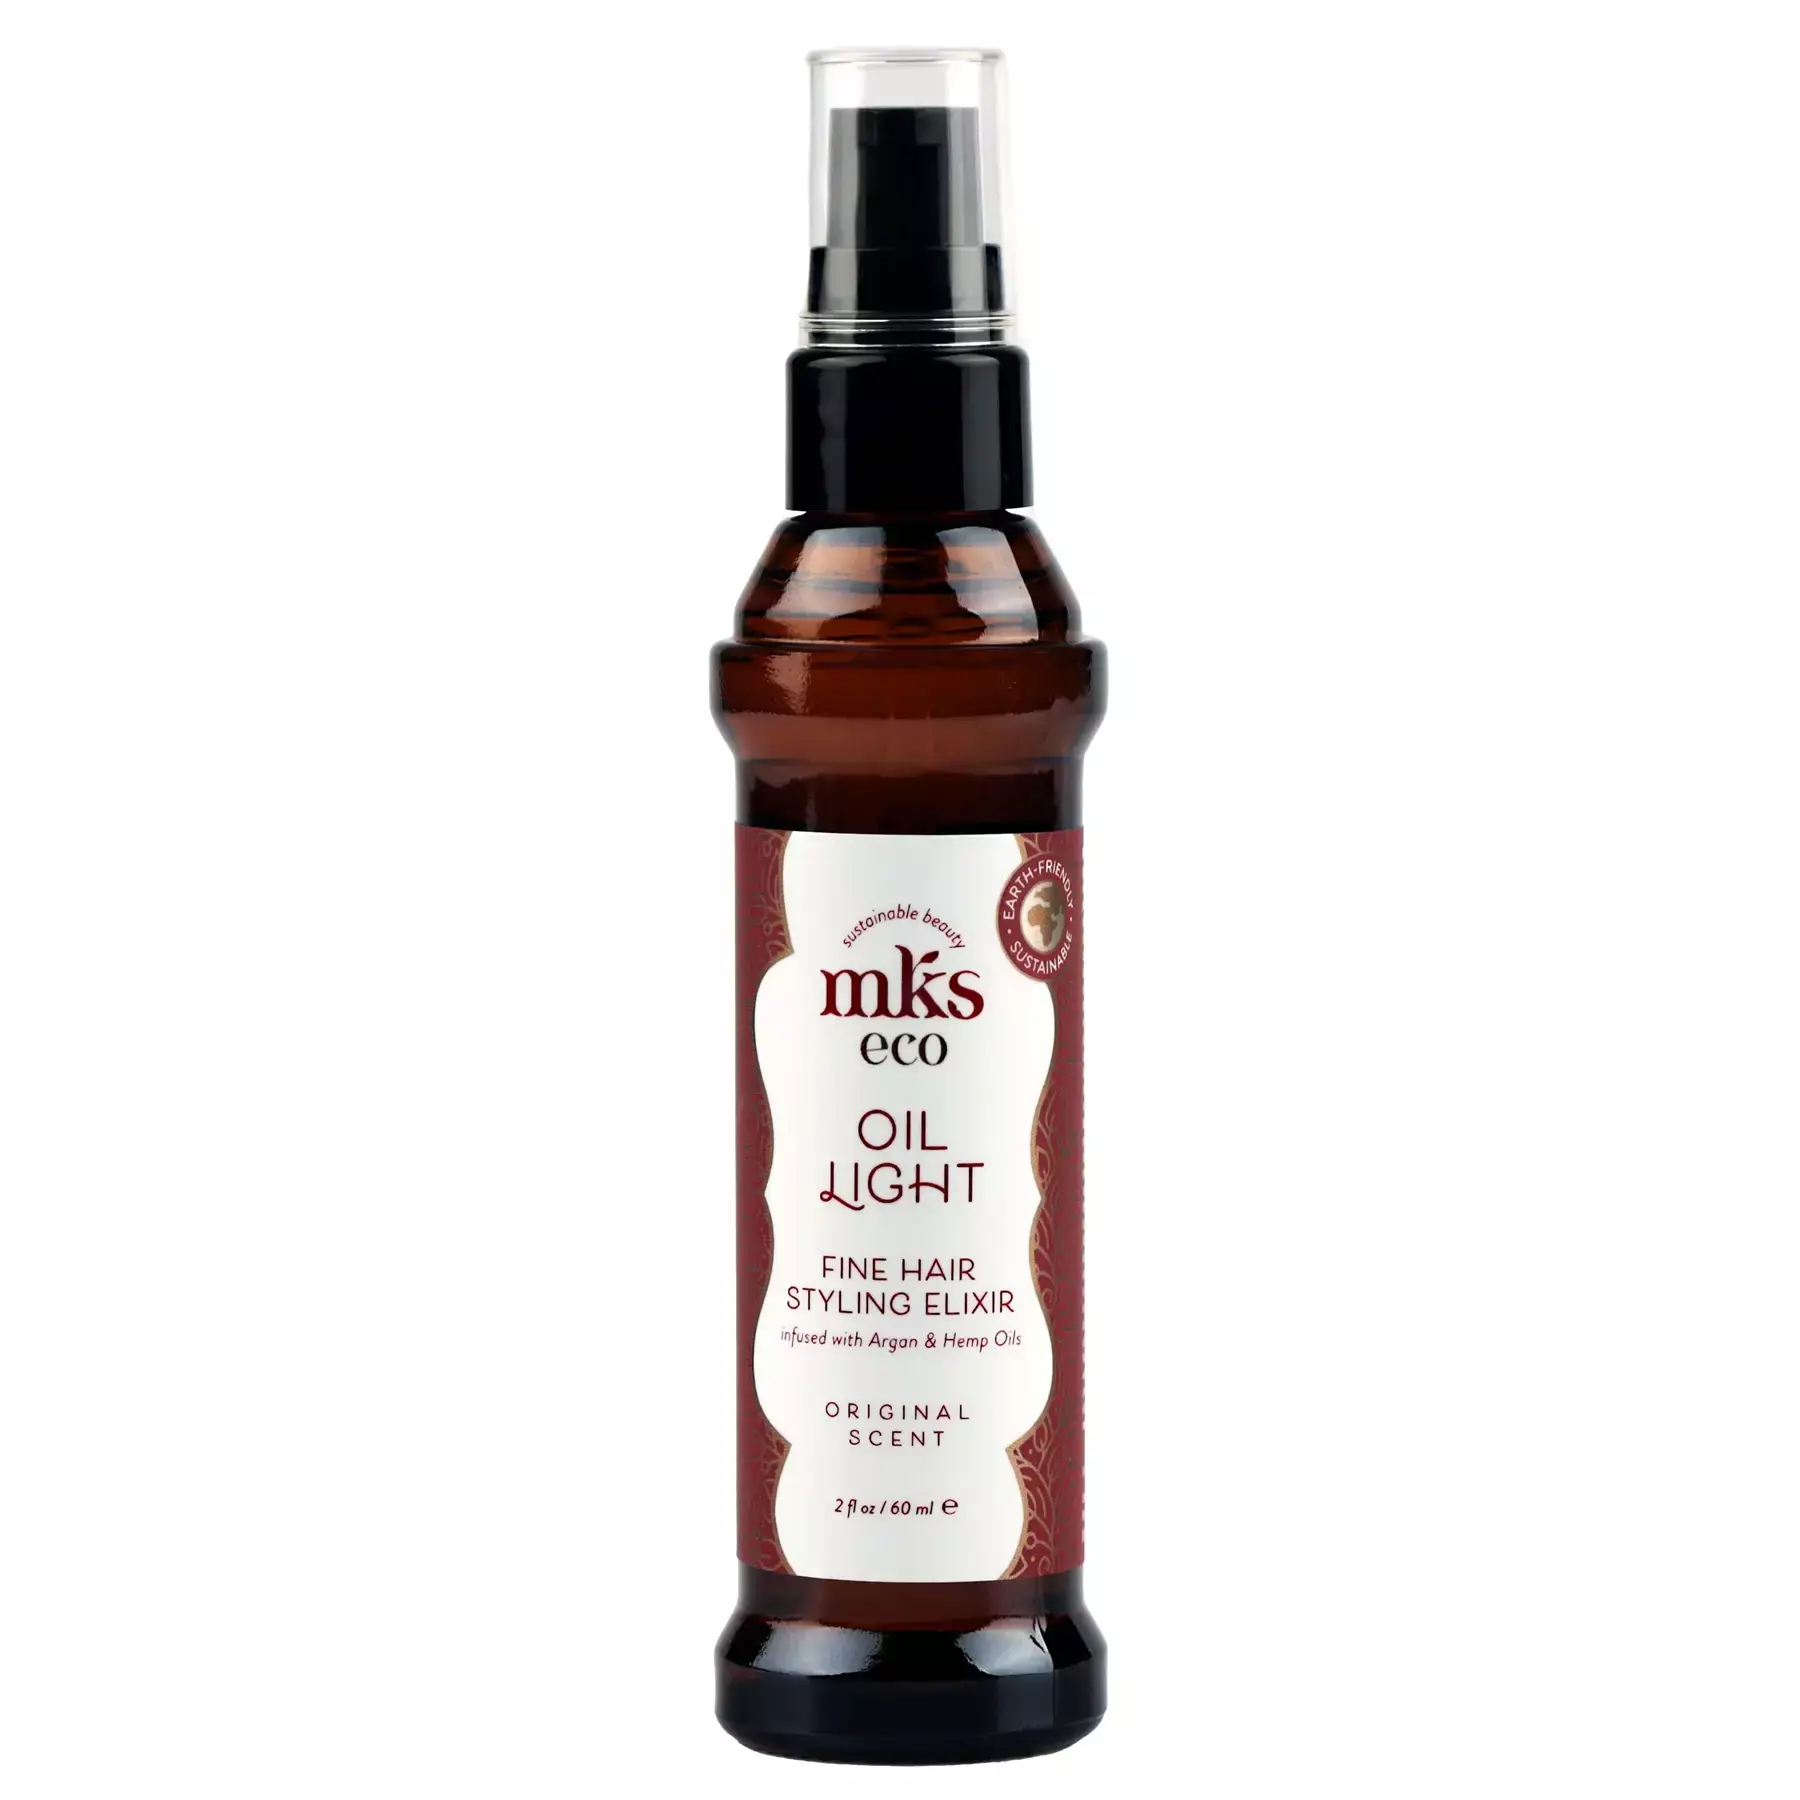 Масло для тонких волос MKS-ECO Oil Light Fine Hair Styling Elixir Original Scent 60 мл — фото №1